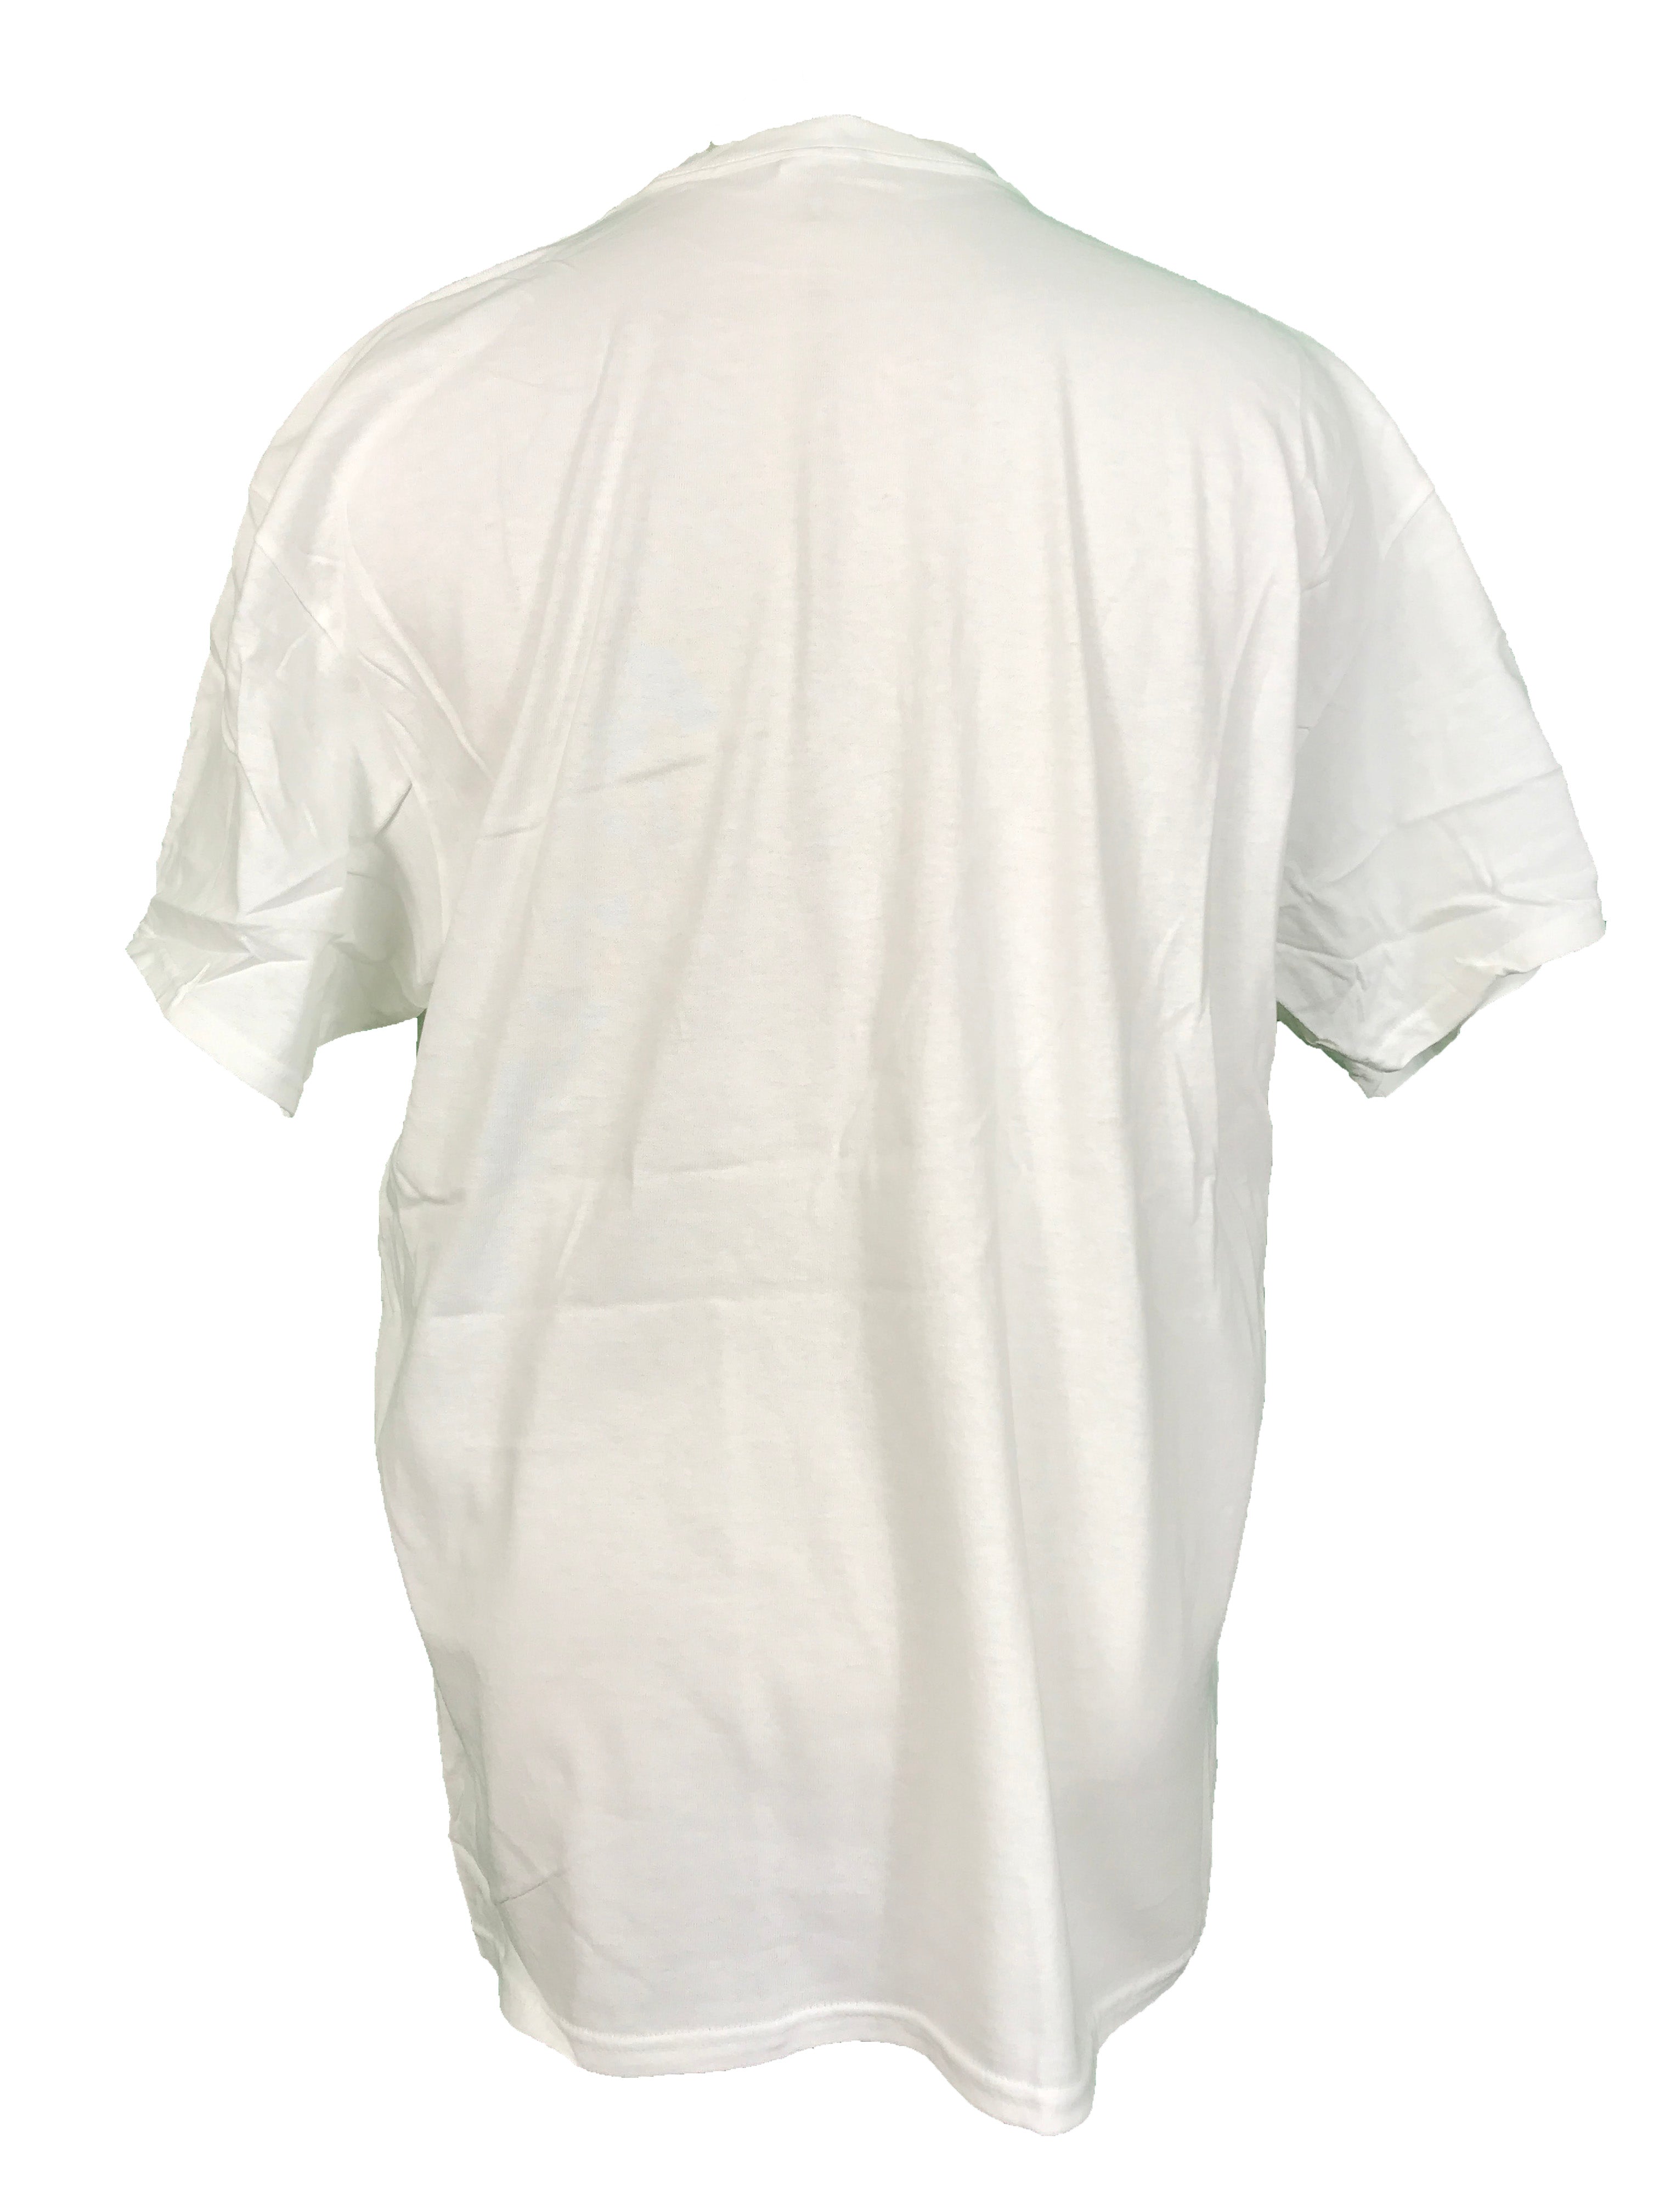 Delta Pro Weight White 2020 MSU Hockey T-Shirt Men's Size XL